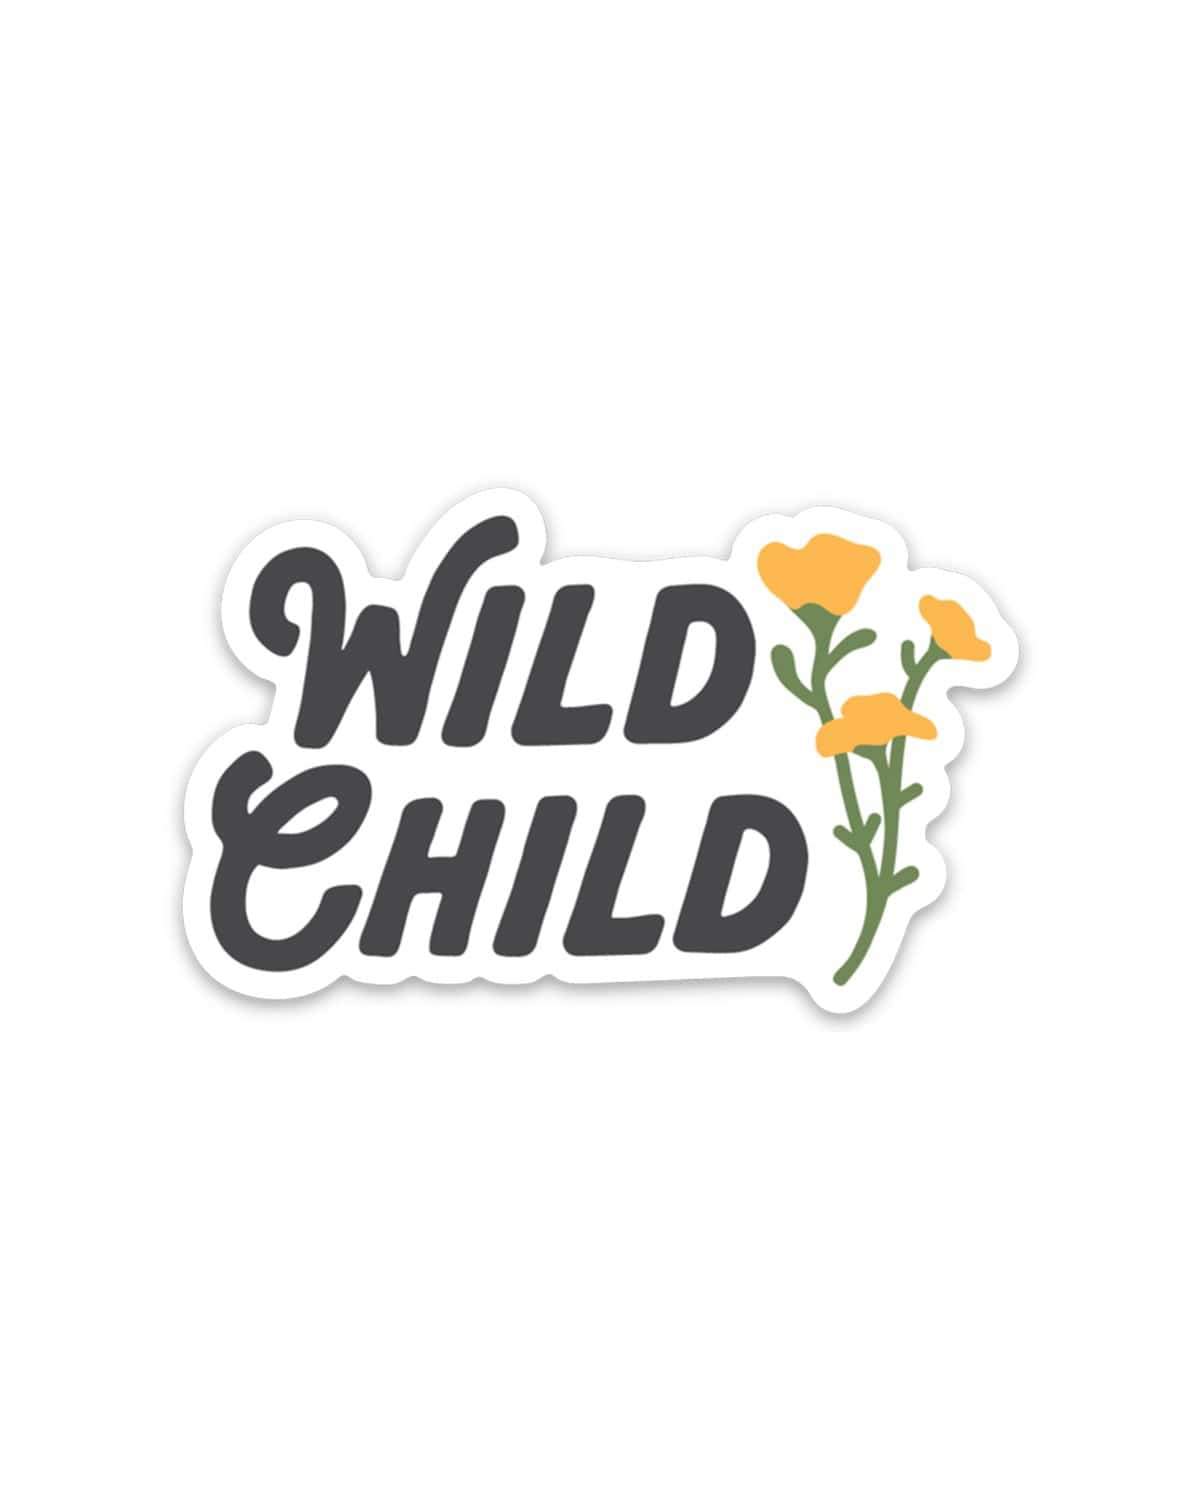 Wild Child | Sticker - Keep Nature Wild